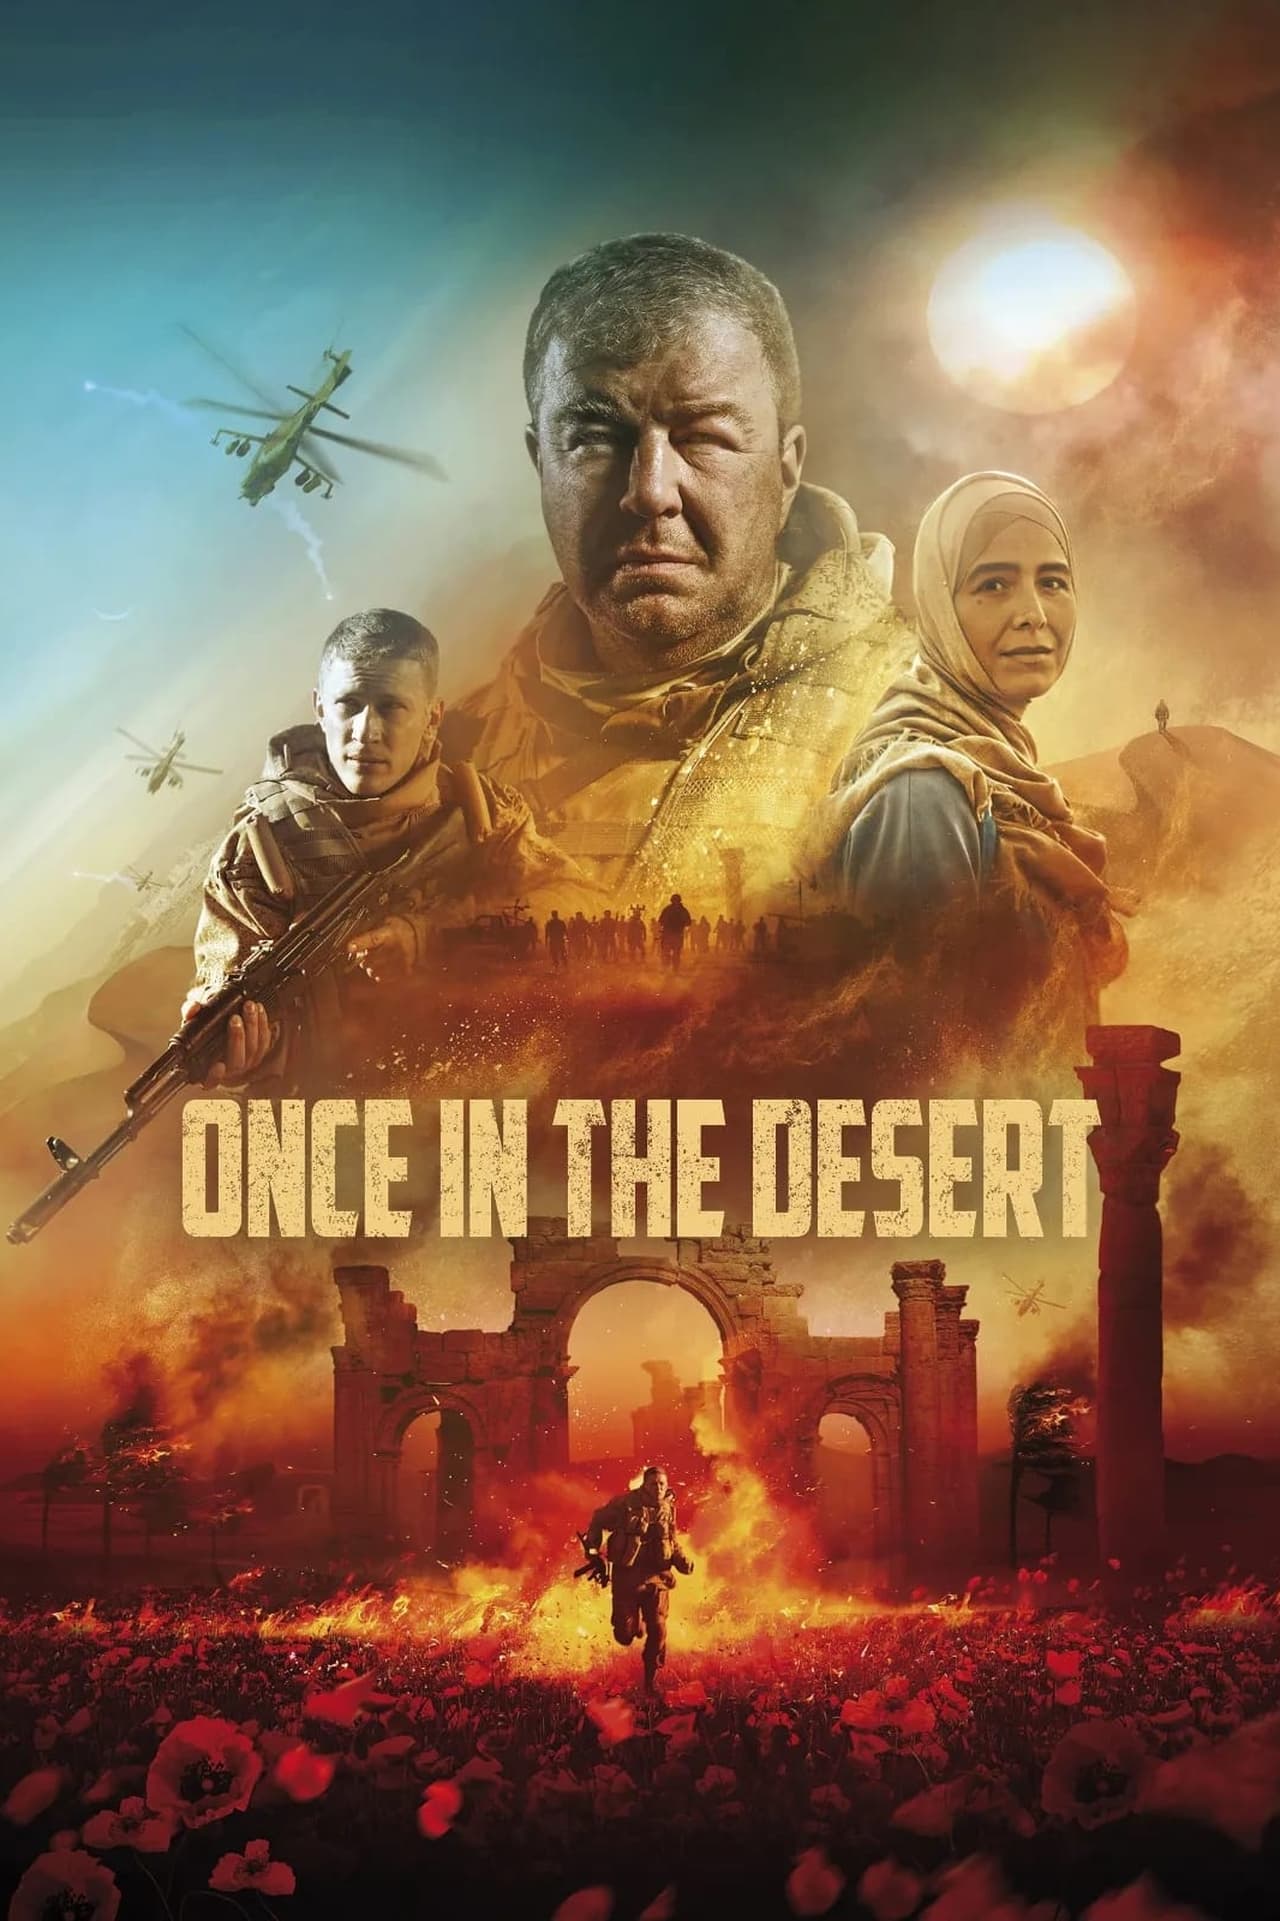 Plakát pro film “Odnaždy v pustyně”